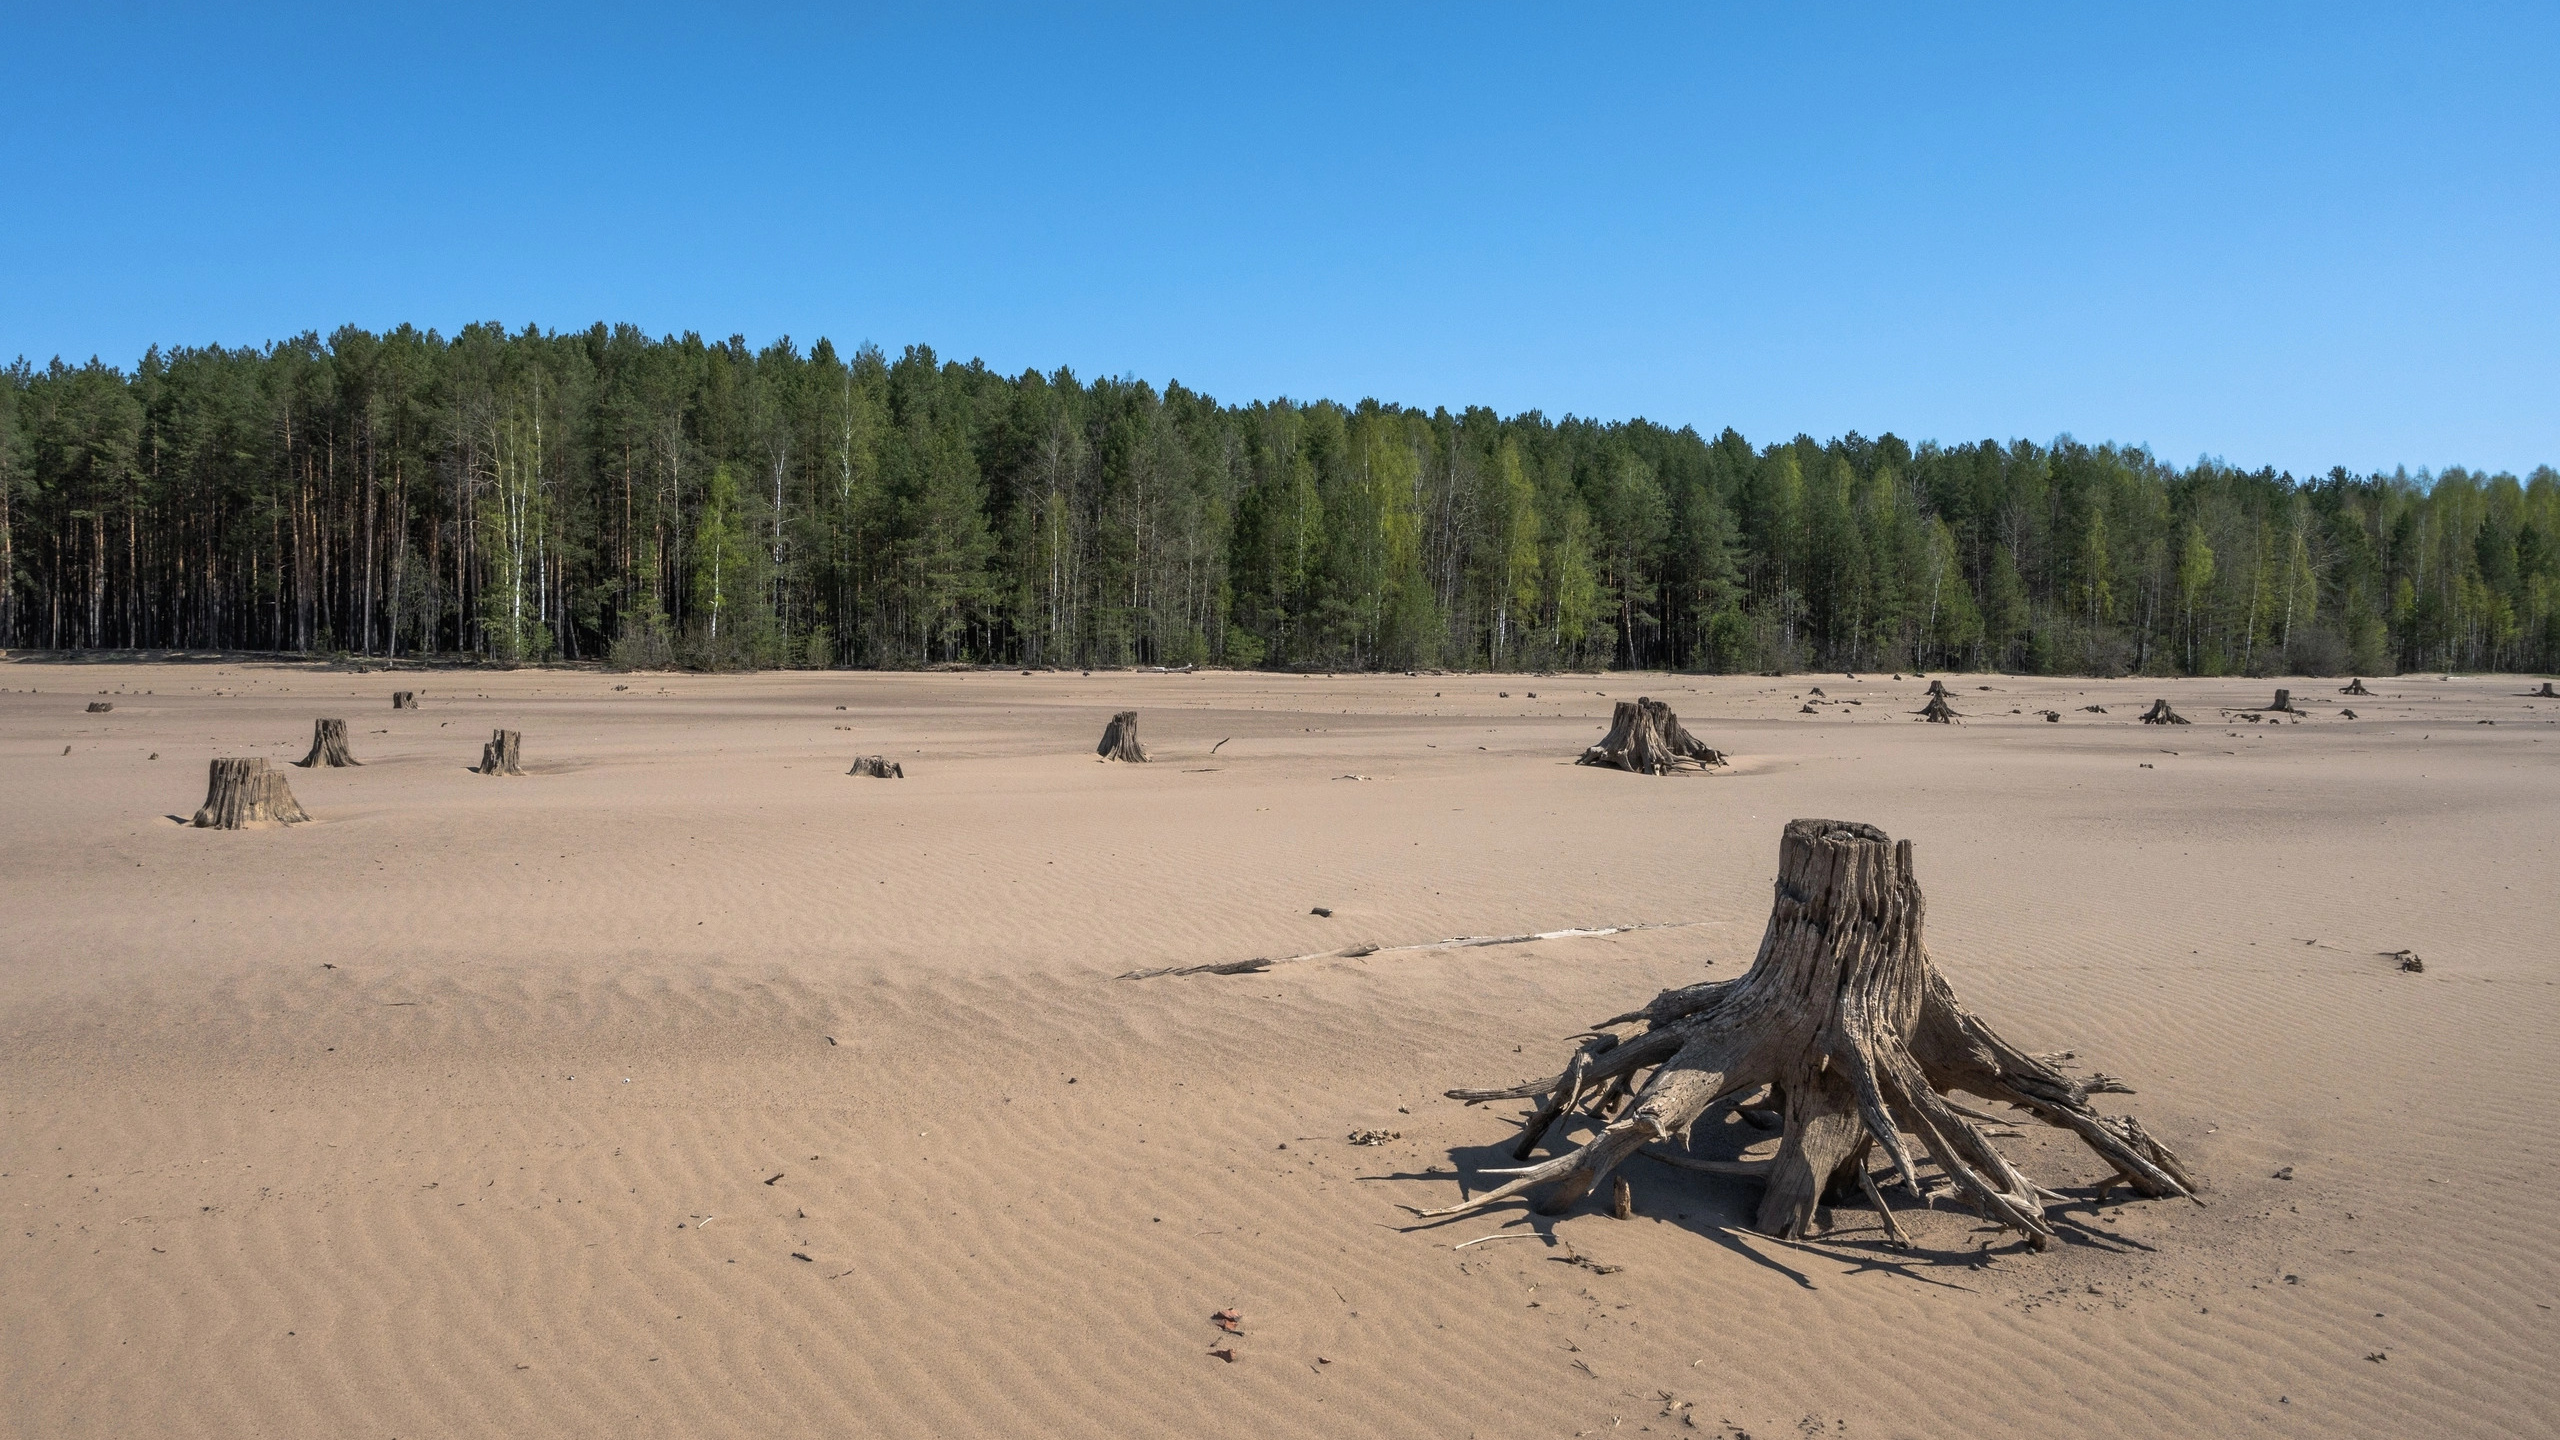 Пермские реки, песчаные берега: подборка живописных мест для шашлыков (и не только) со свободным доступом